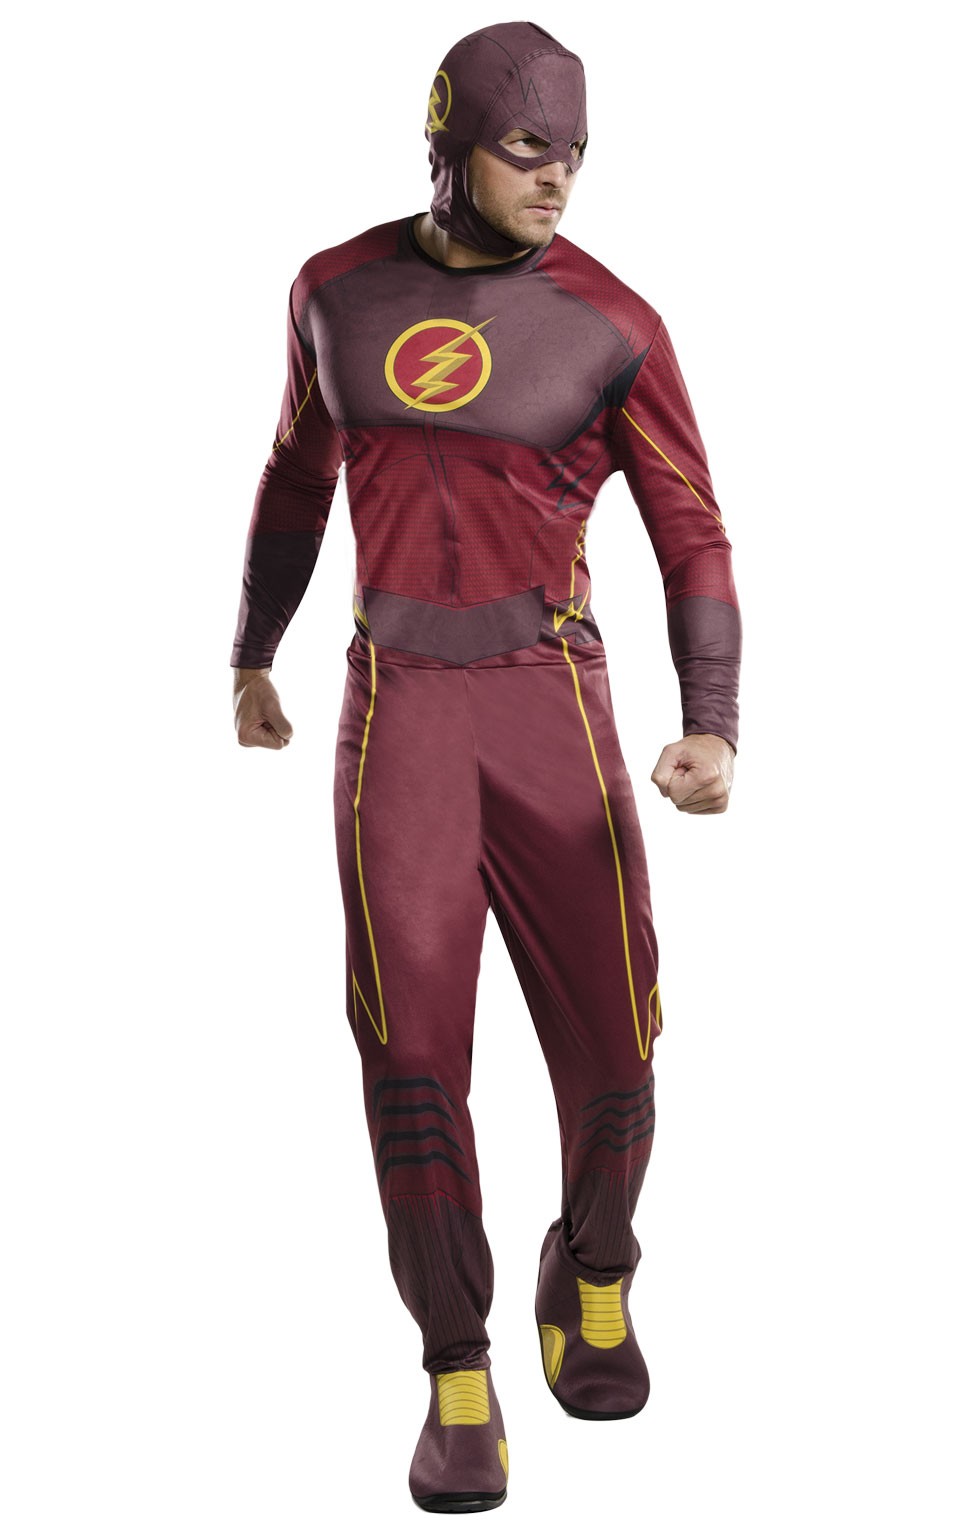 Strikt Nominaal lineair The flash kostuum heren | Jokershop.be - Superhelden kleding